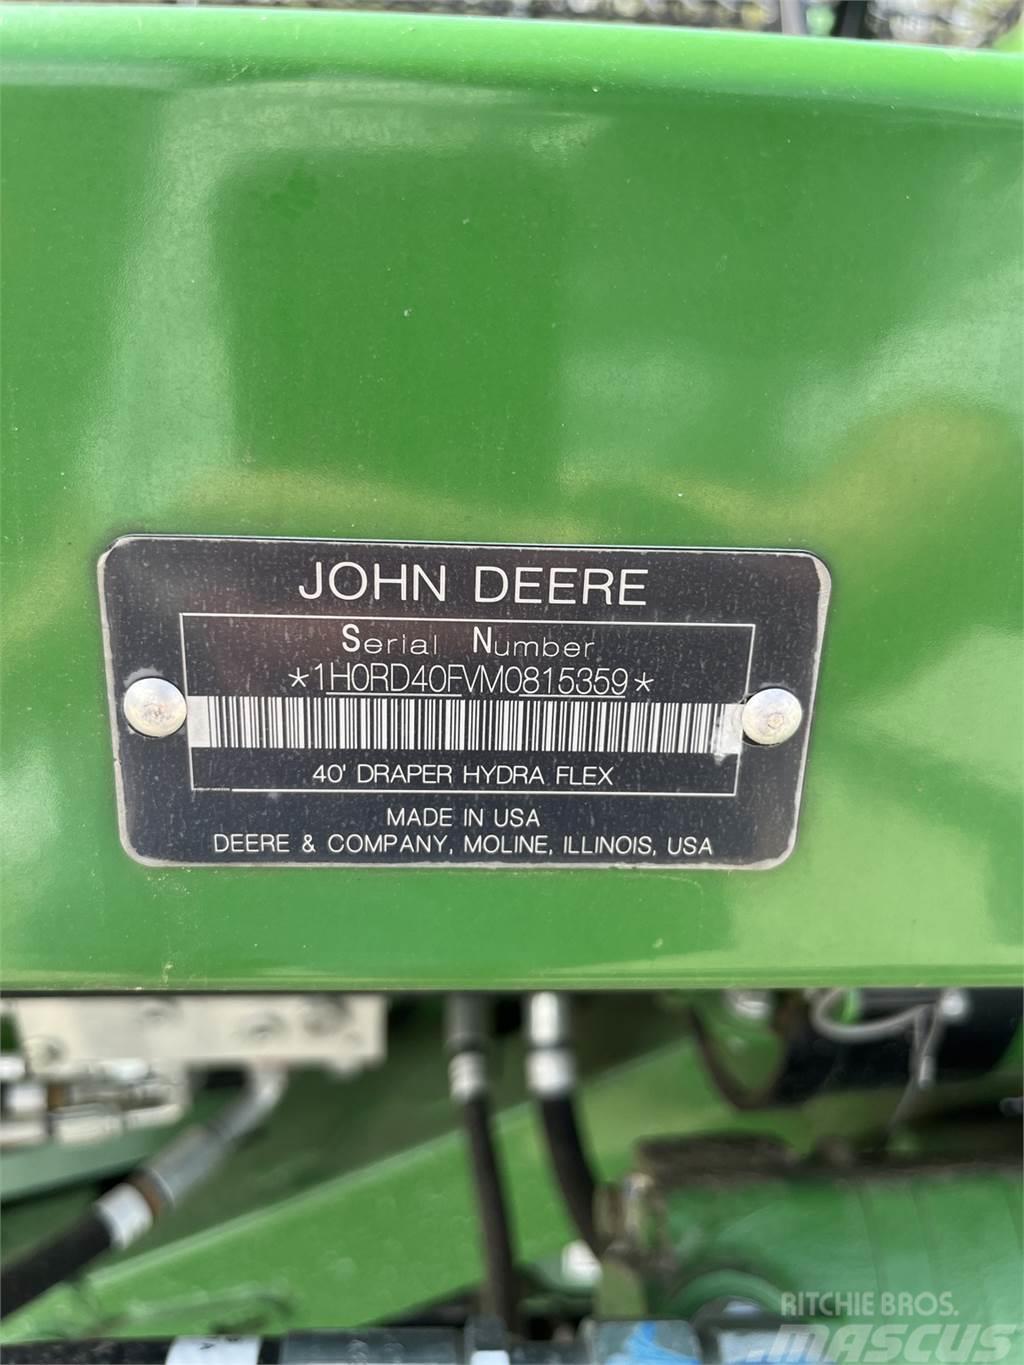 John Deere RD40F Lisävarusteet ja komponentit